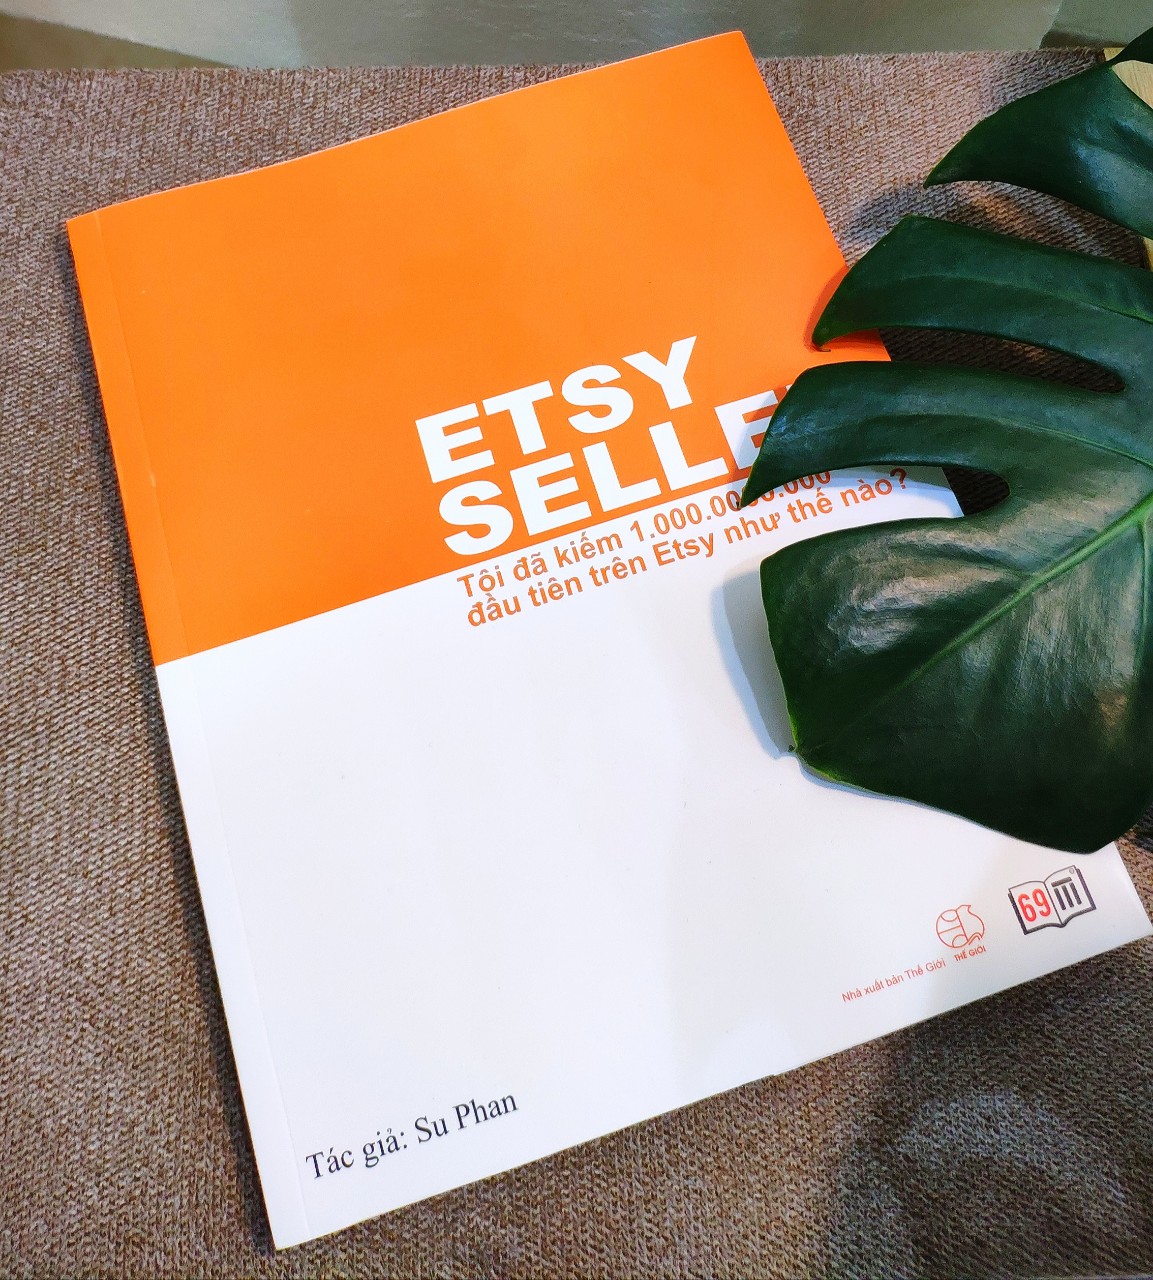 Sách "Etsy Seller"